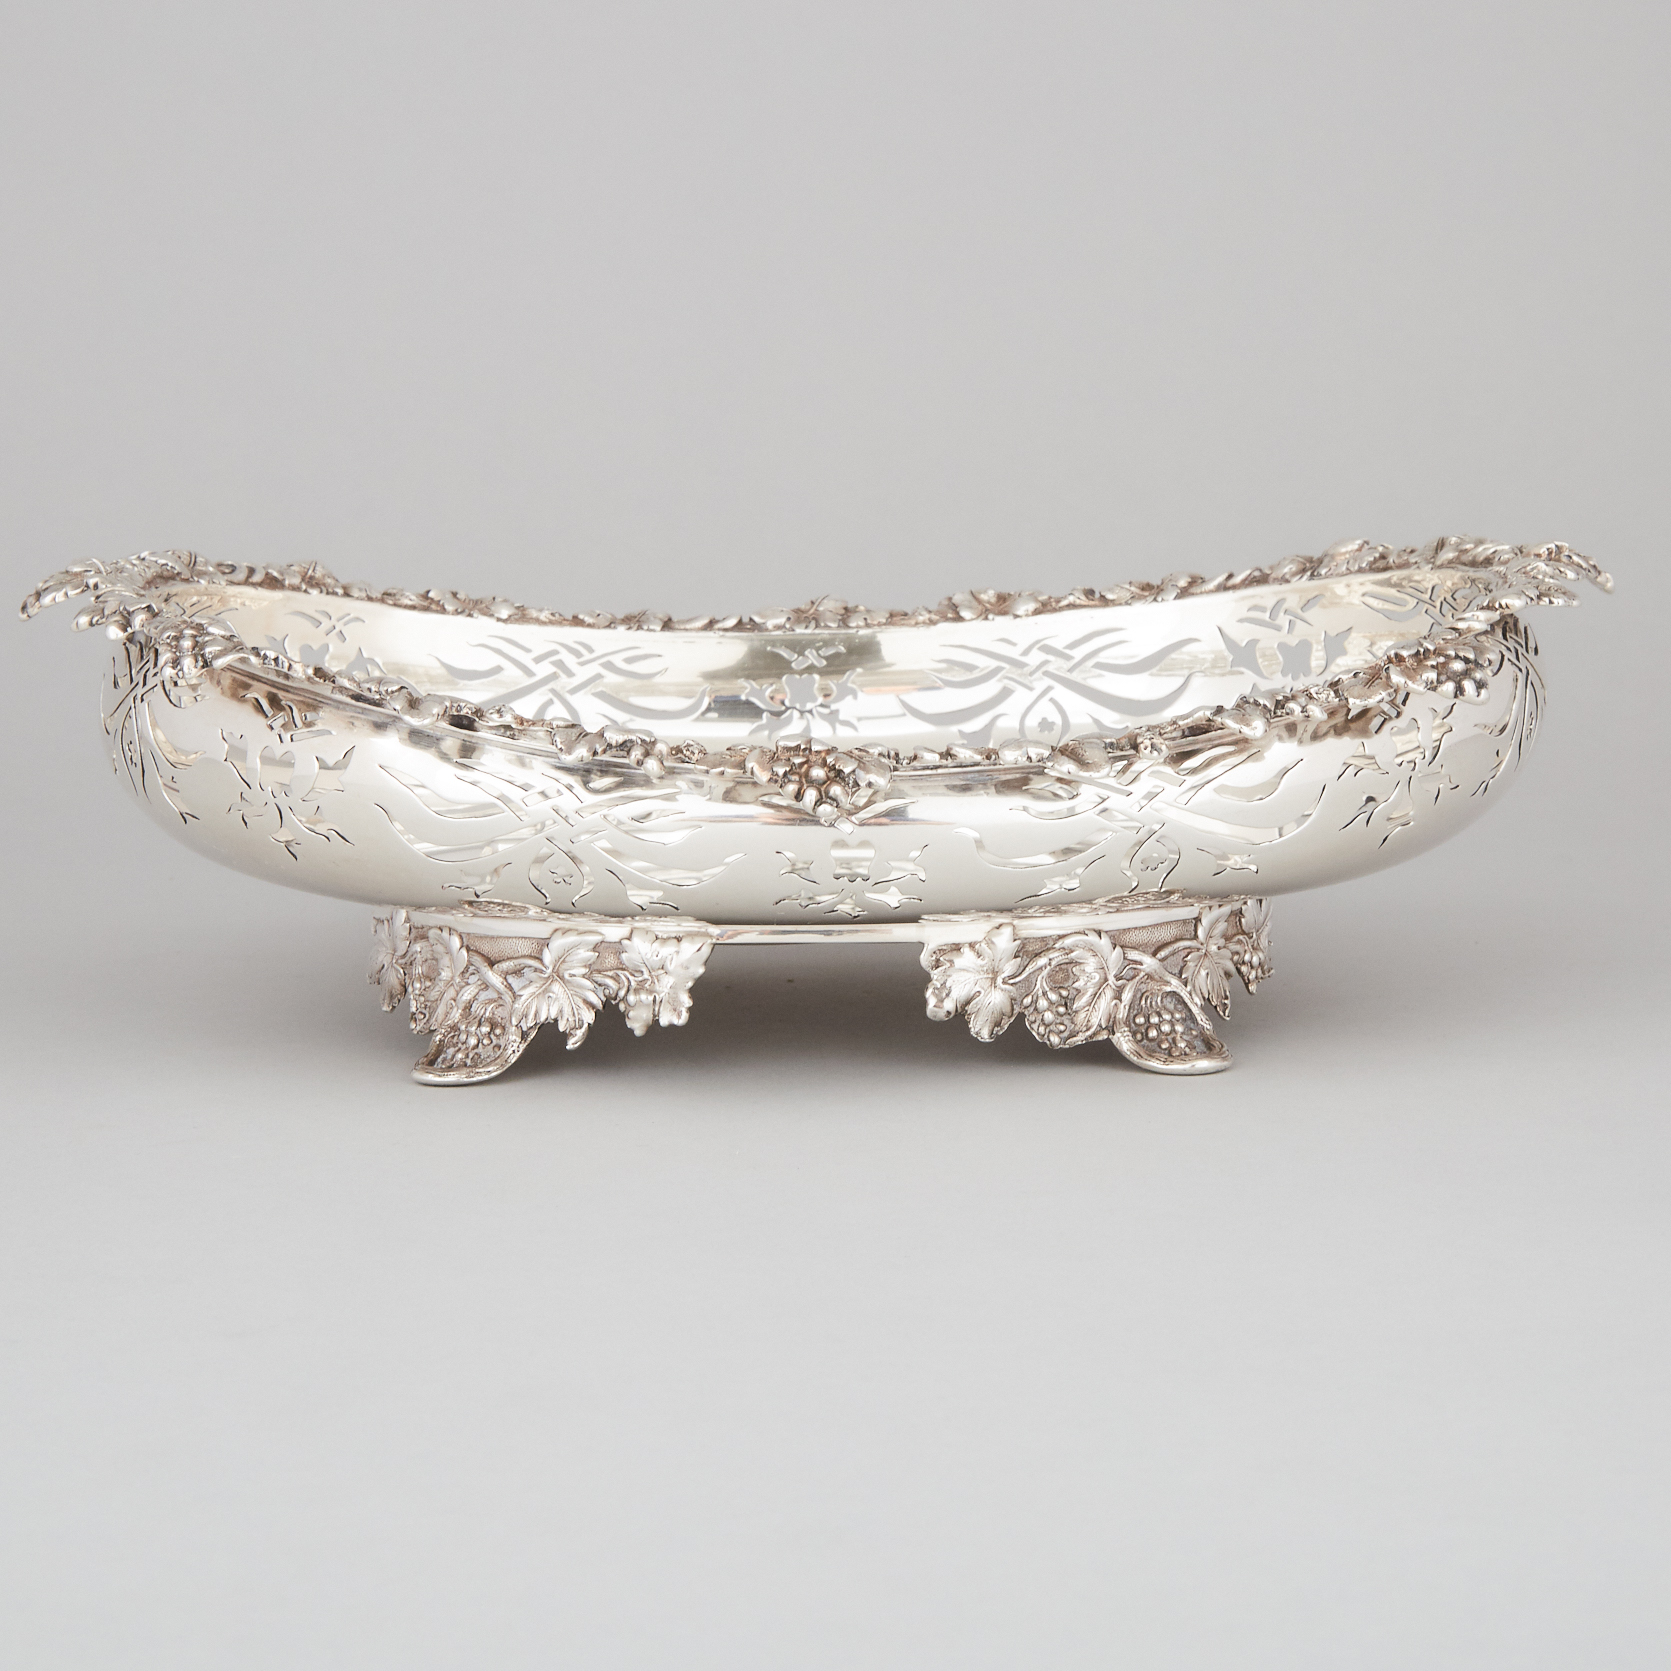 American Silver Pierced Oval Bowl, Tiffany & Co., New York, N.Y., c.1875-91